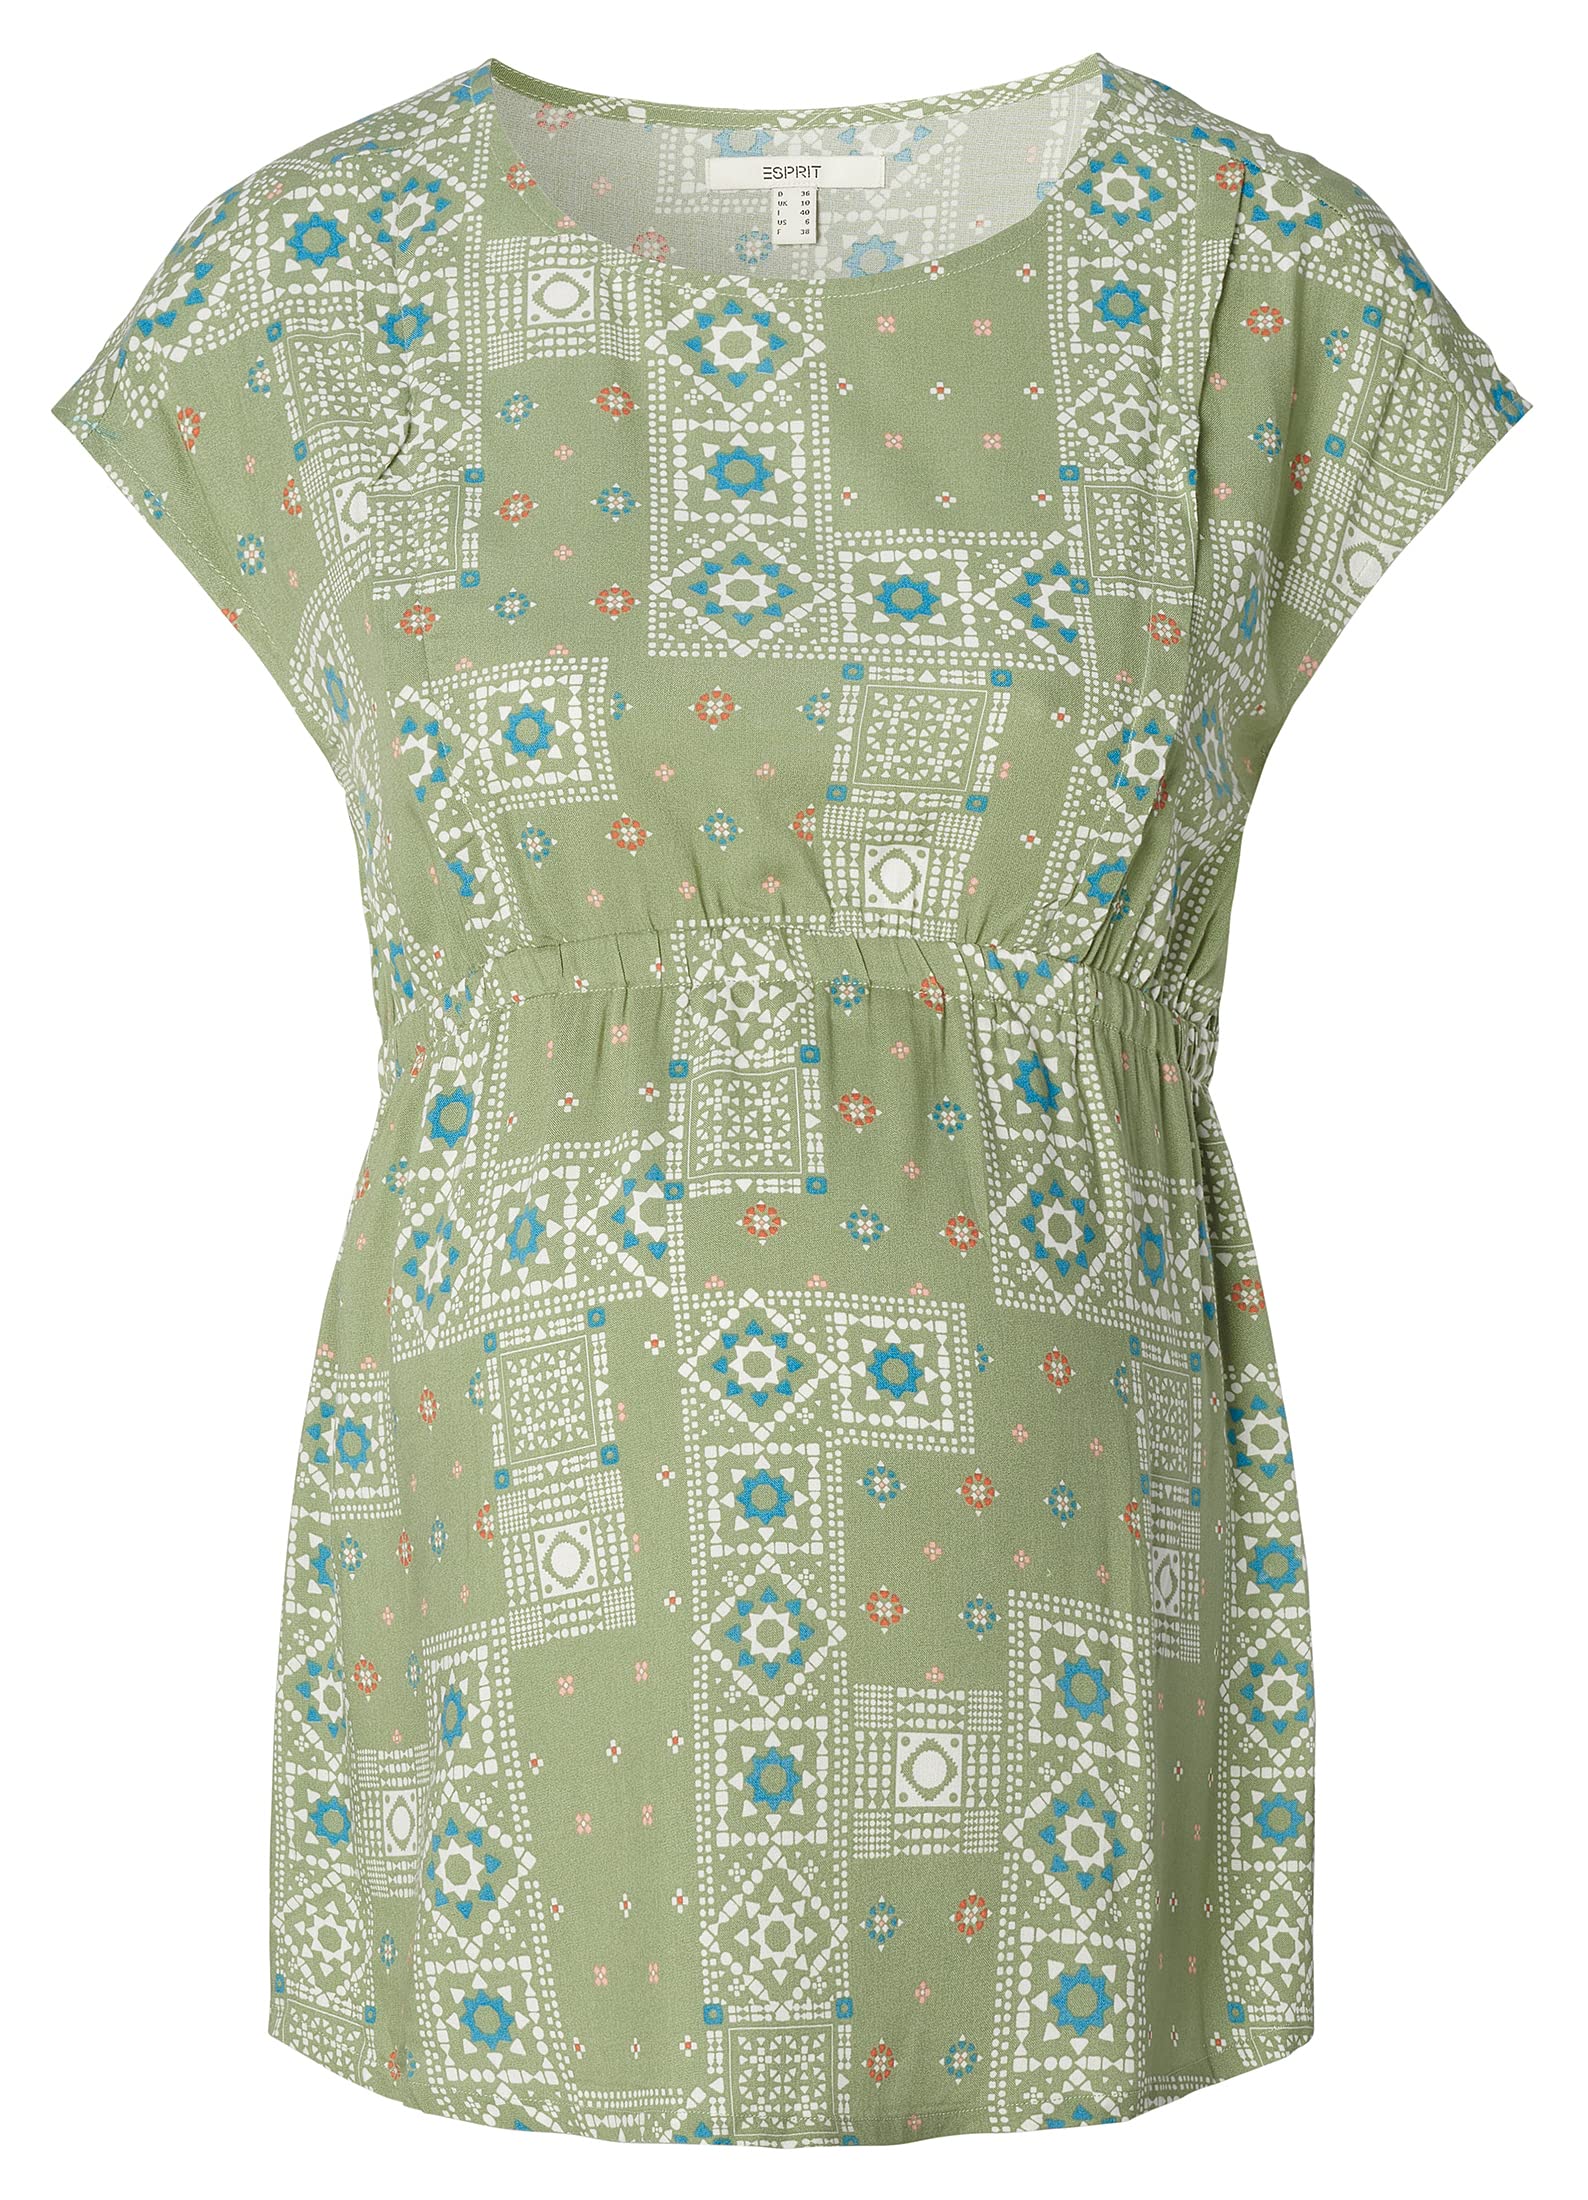 ESPRIT Damen Blouse Nursing Short Sleeve Allover Print Bluse, Real Olive-307, 34